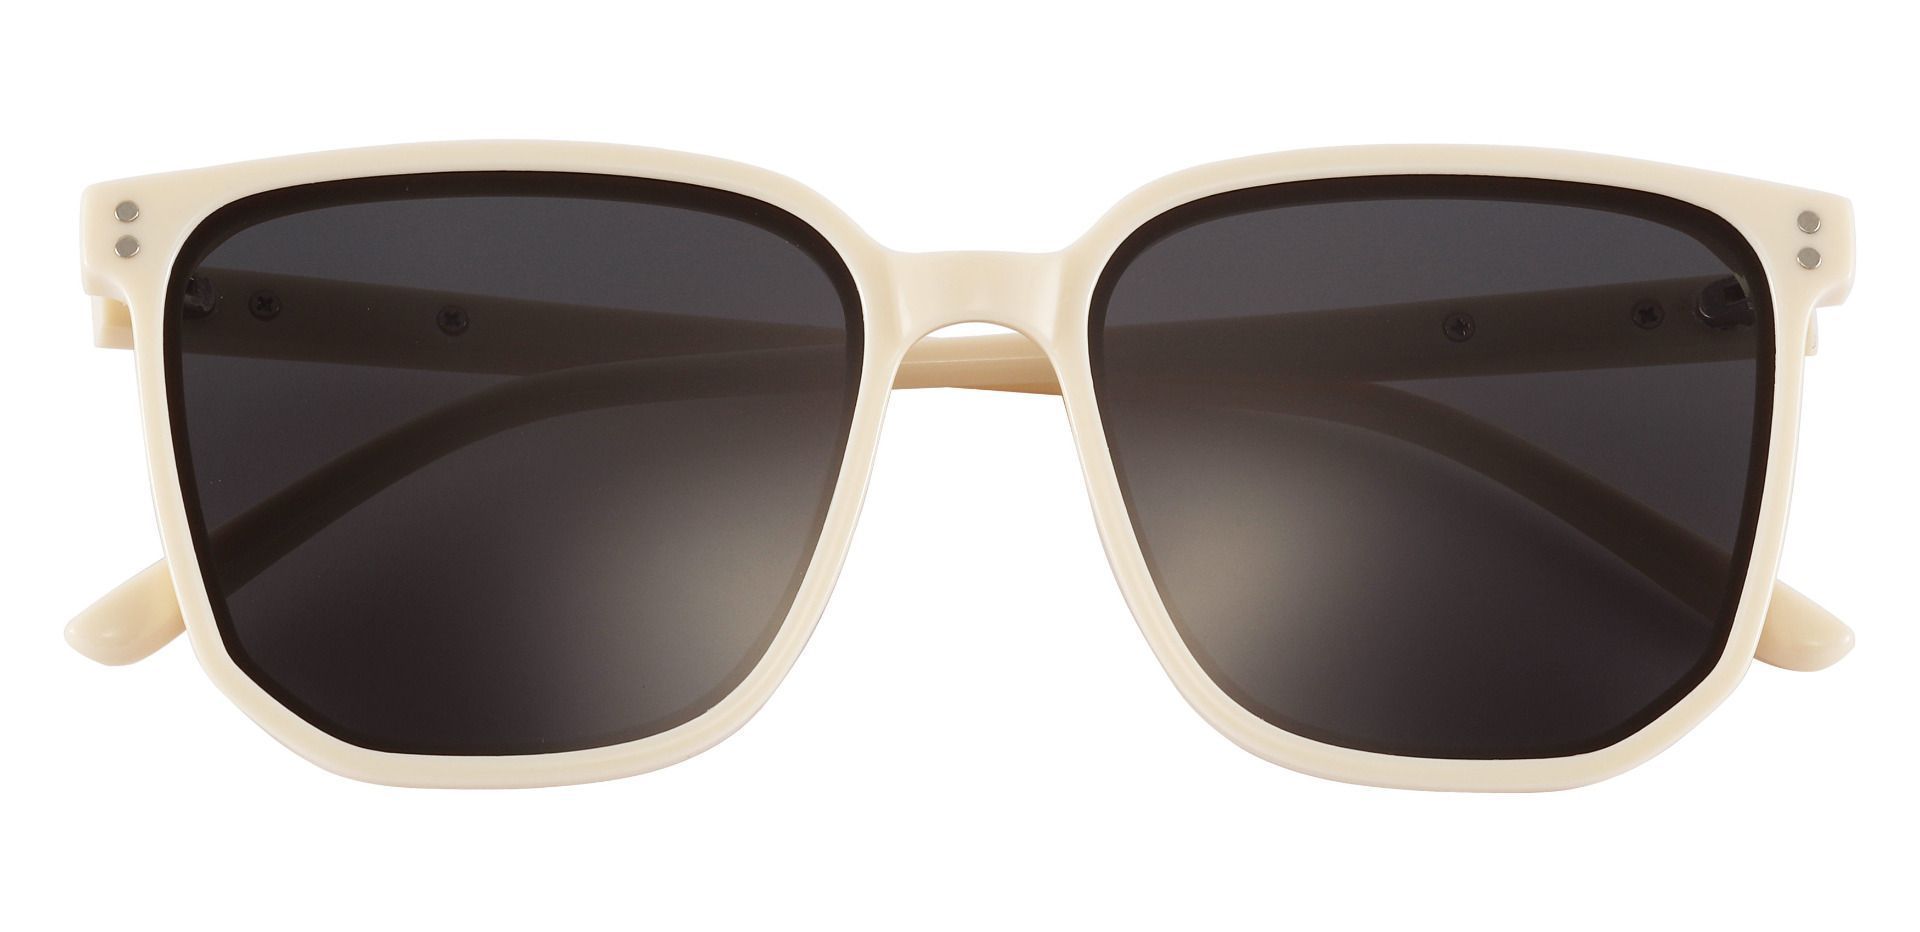 Richmond Square White Non-Rx Sunglasses